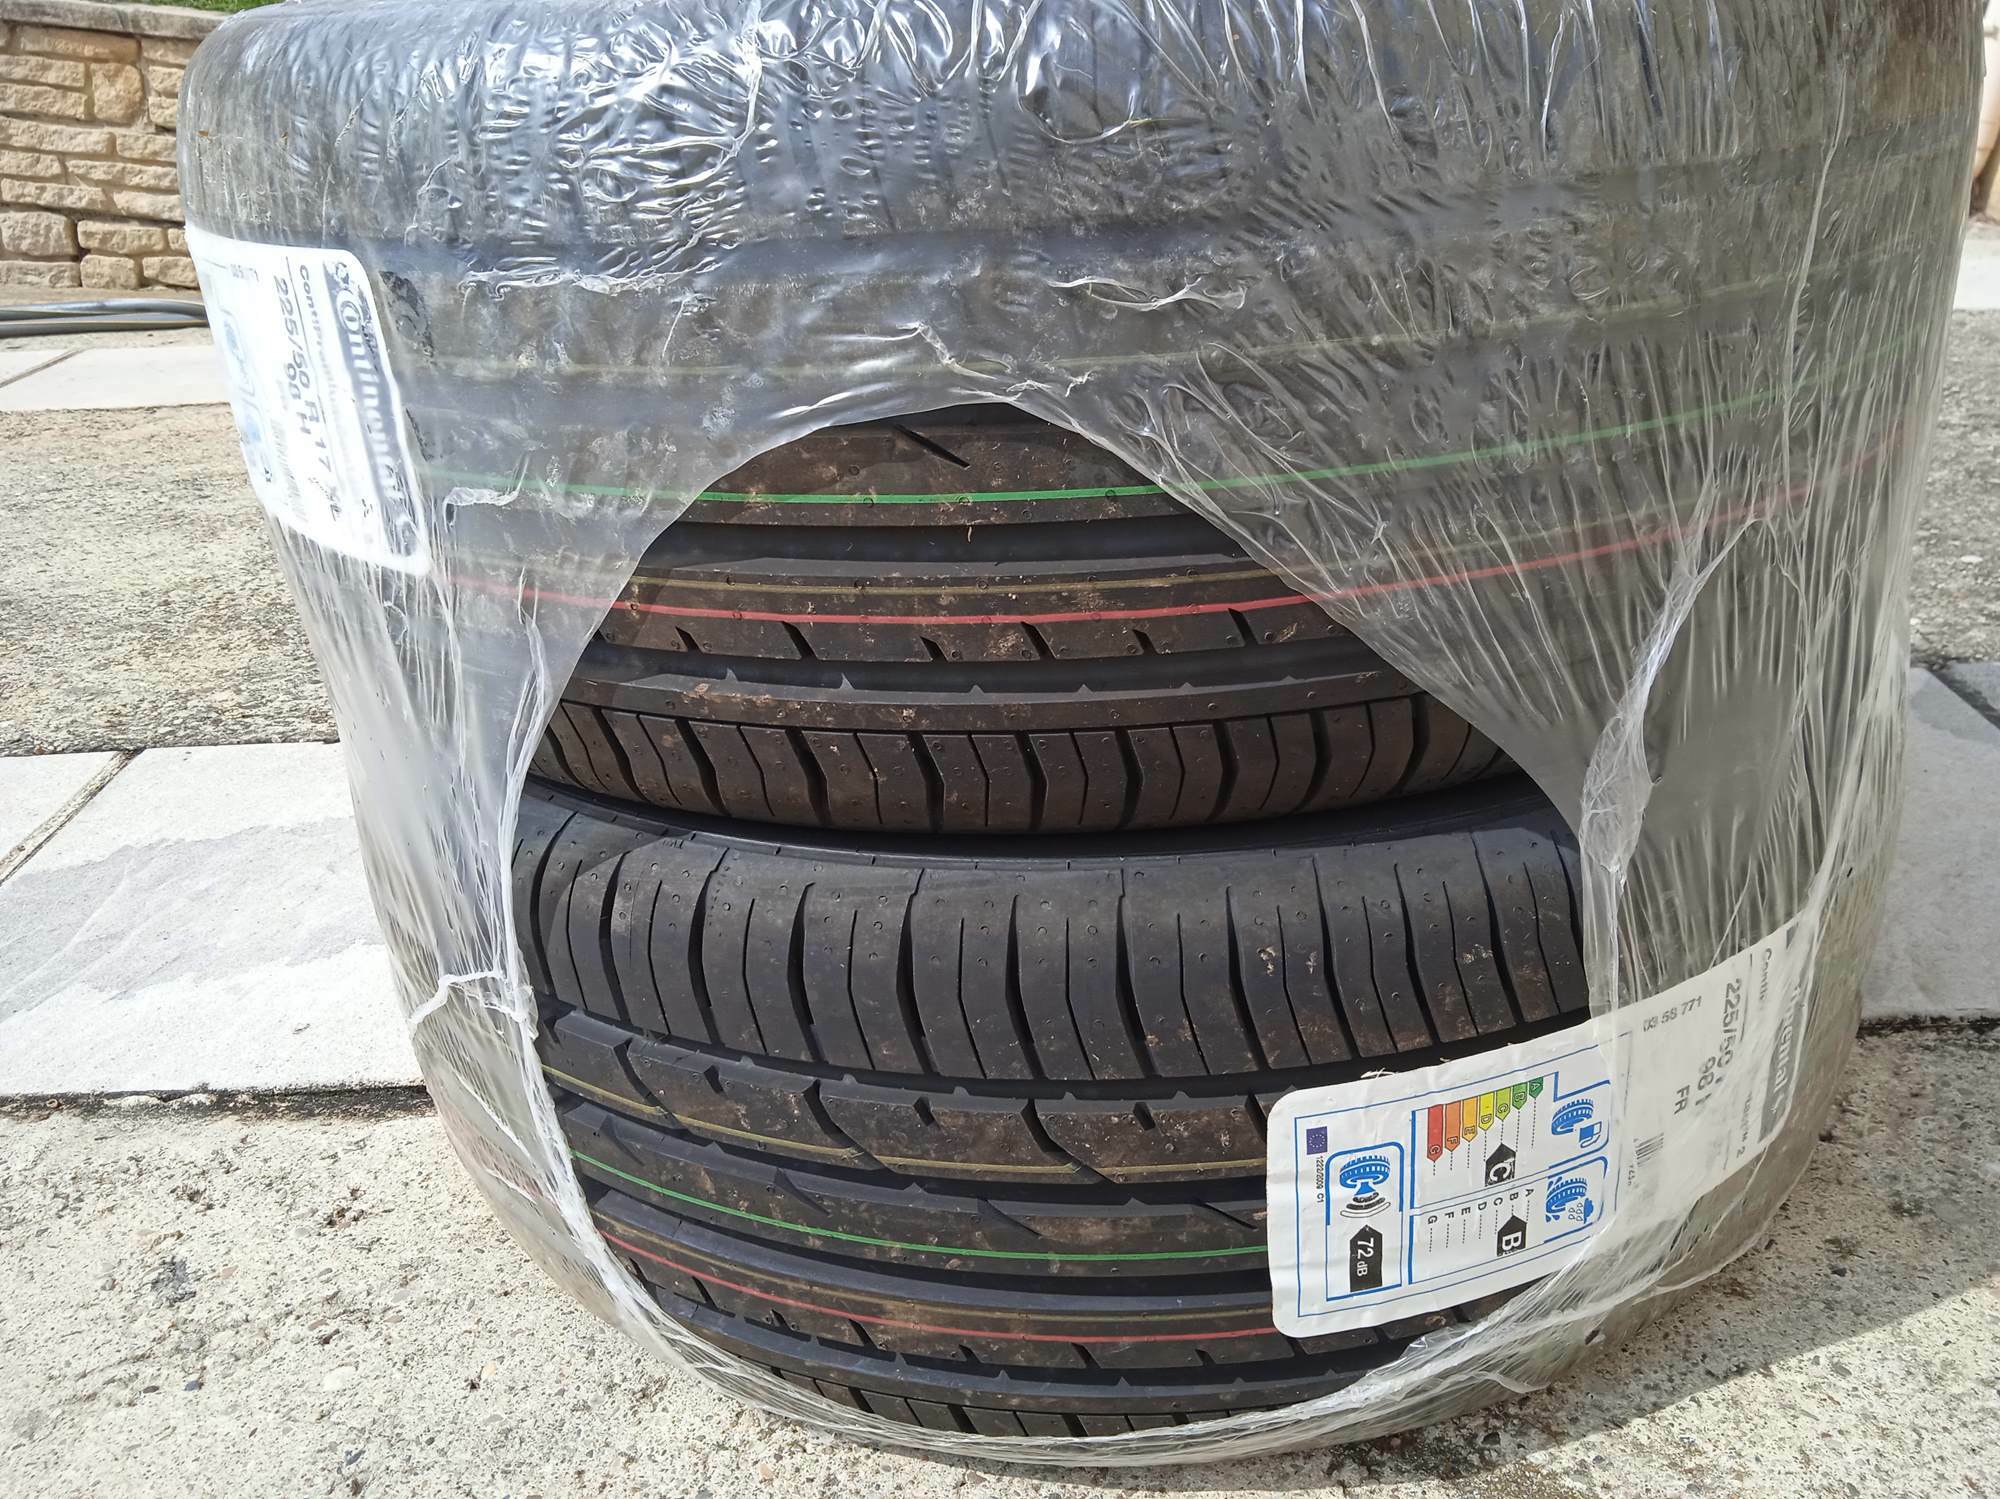 Vends paire pneus continental 225/50/17 neufs encore emballés N53t